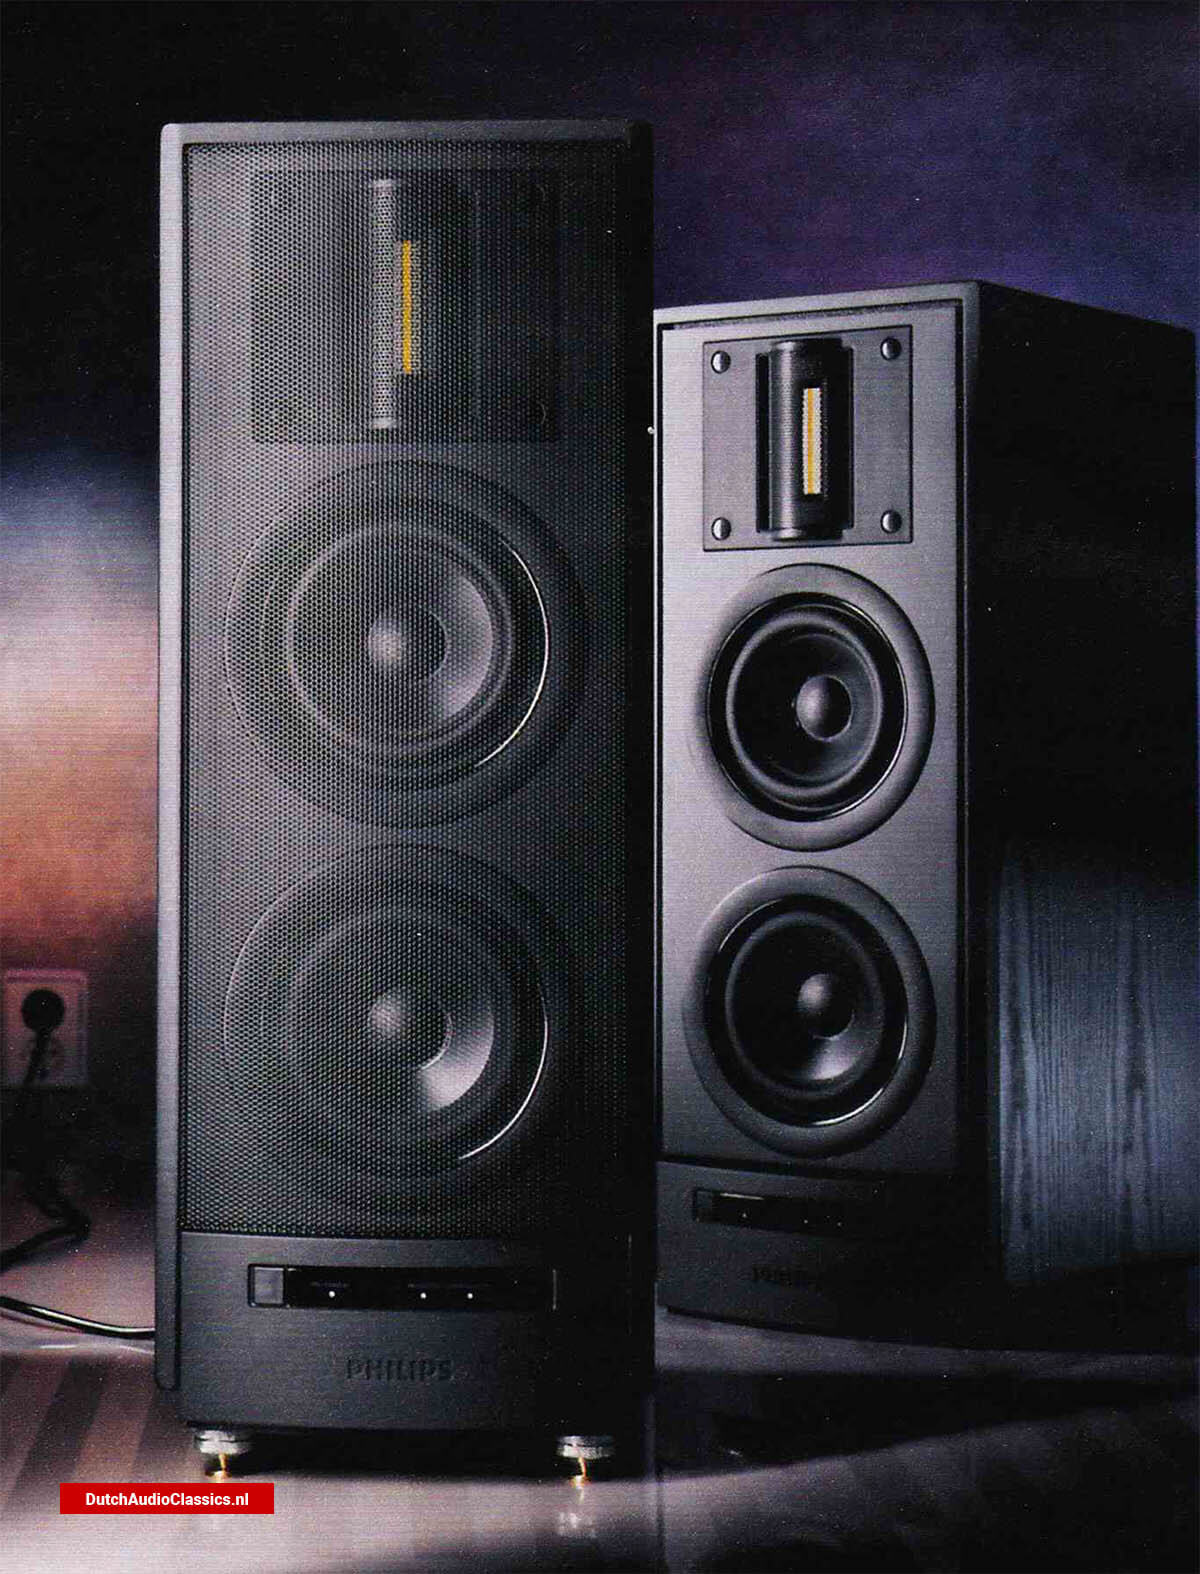 Philips-DSS930-speakers.jpg